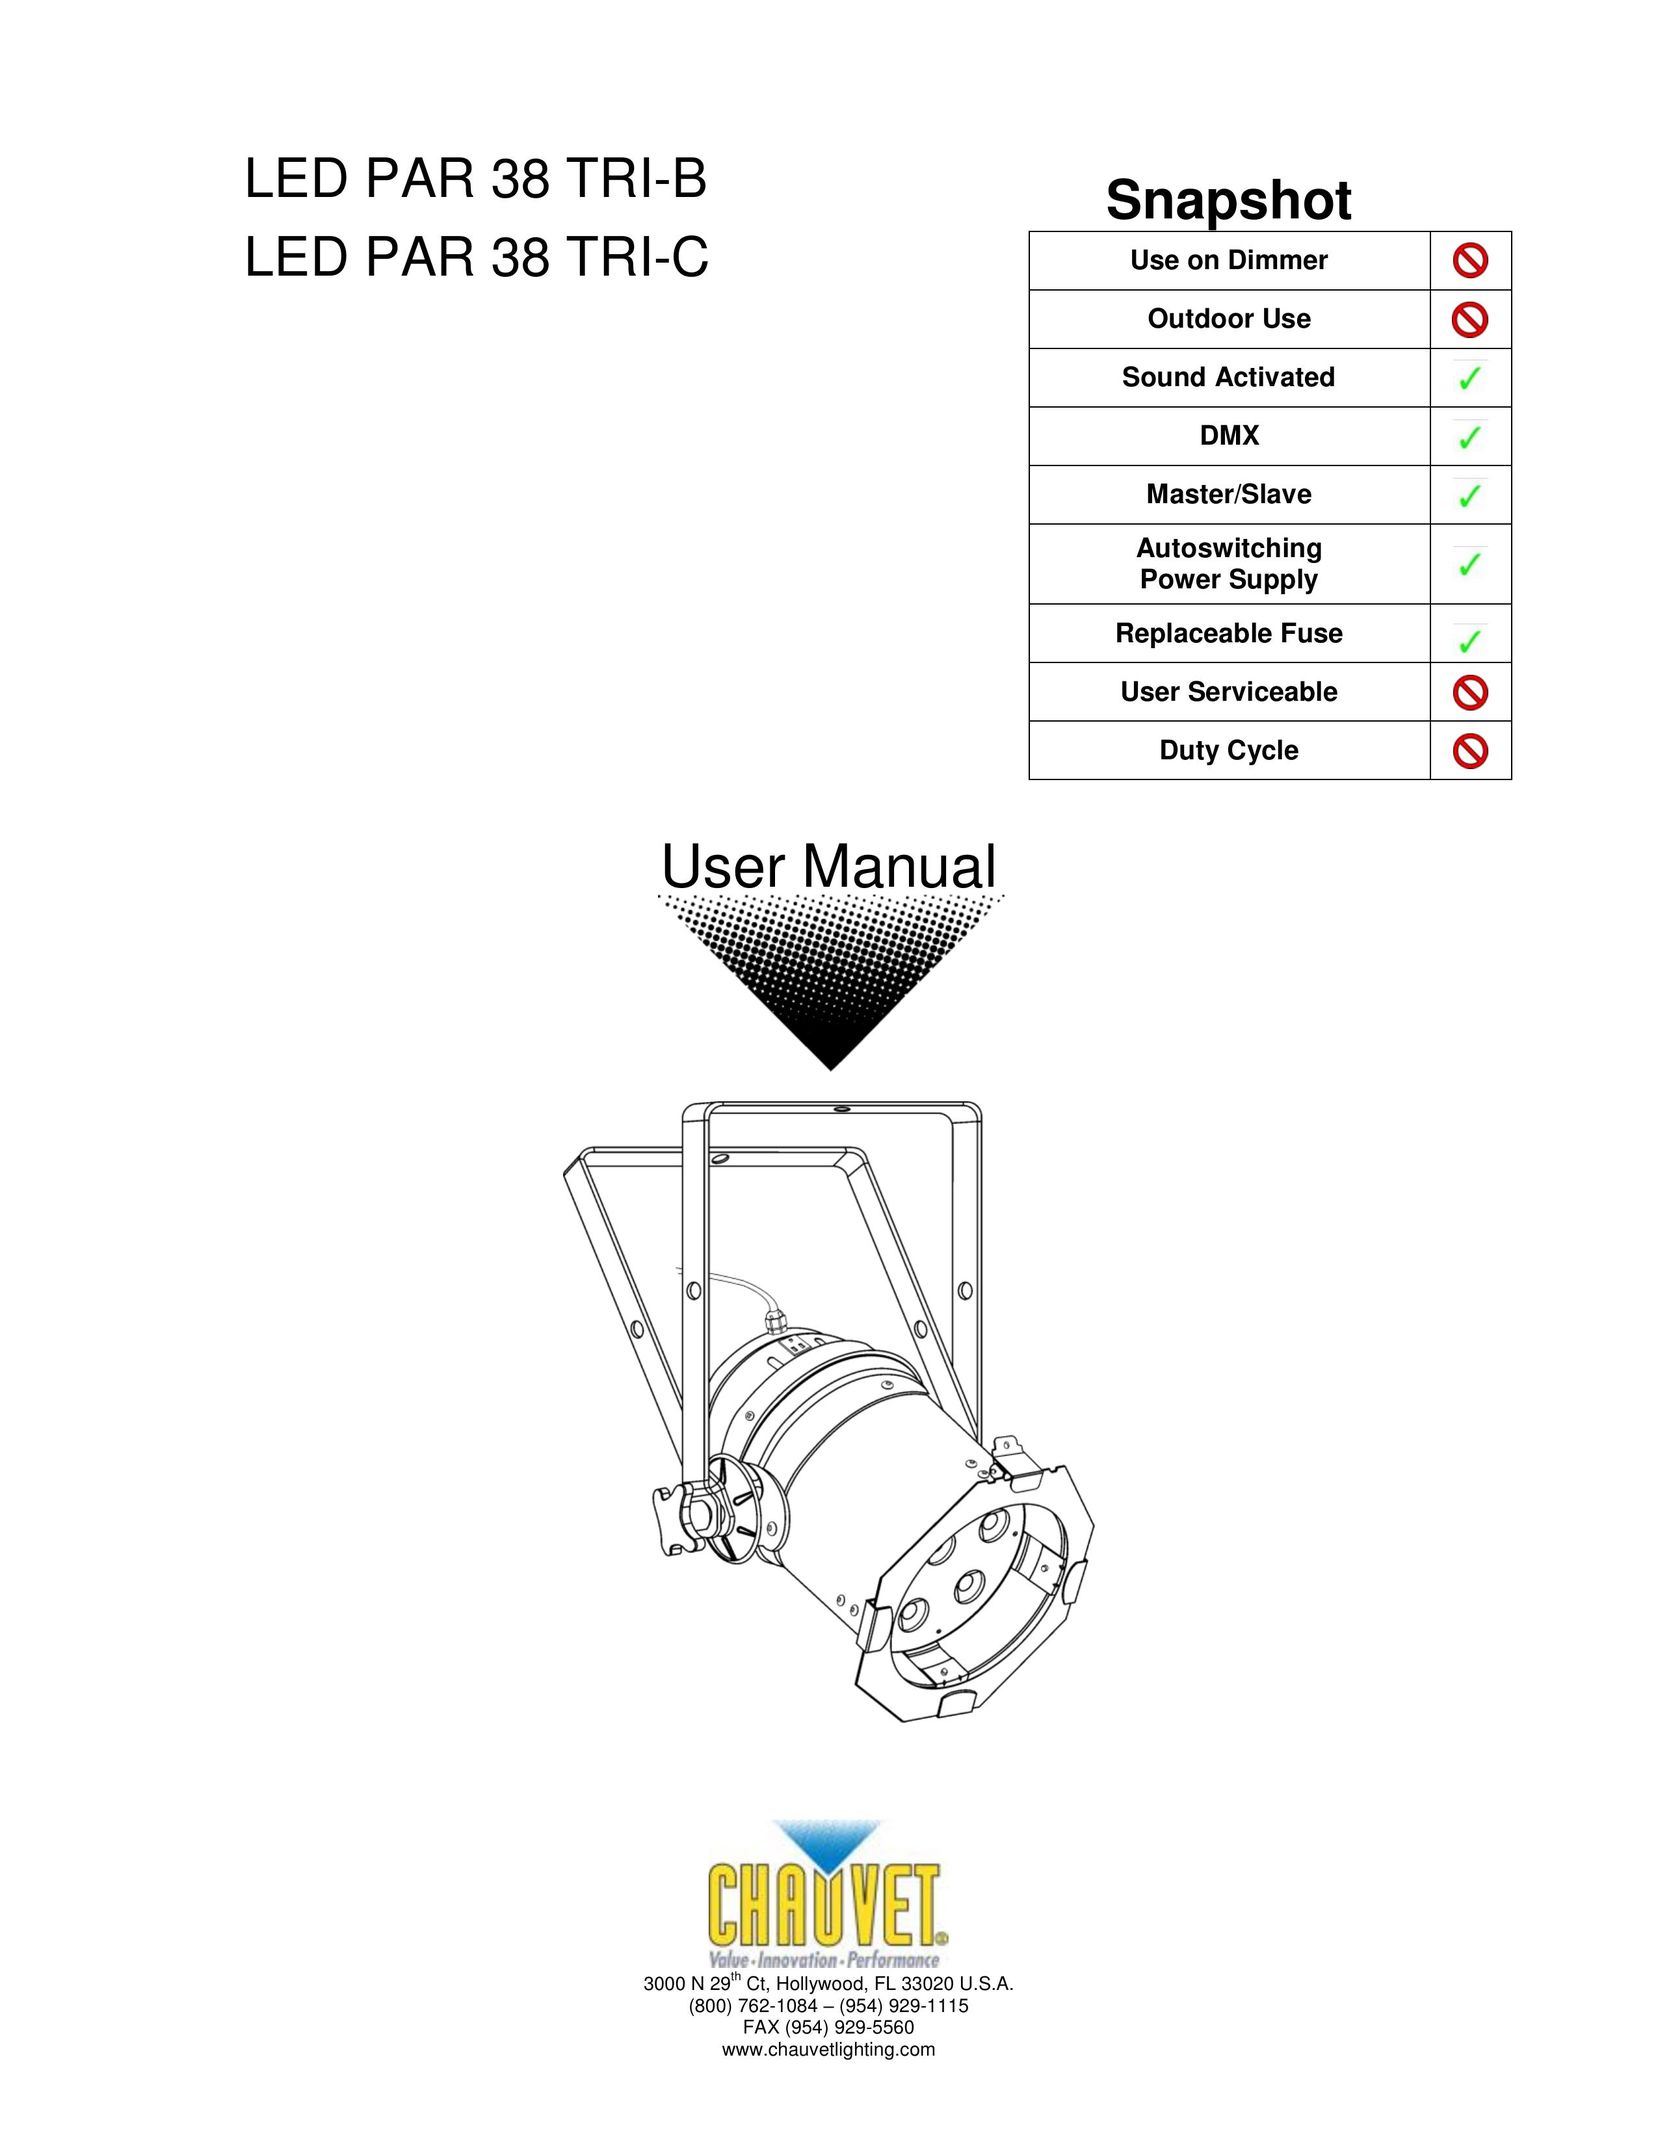 Chauvet LED PAR 38 TRI-C Laminator User Manual (Page 1)